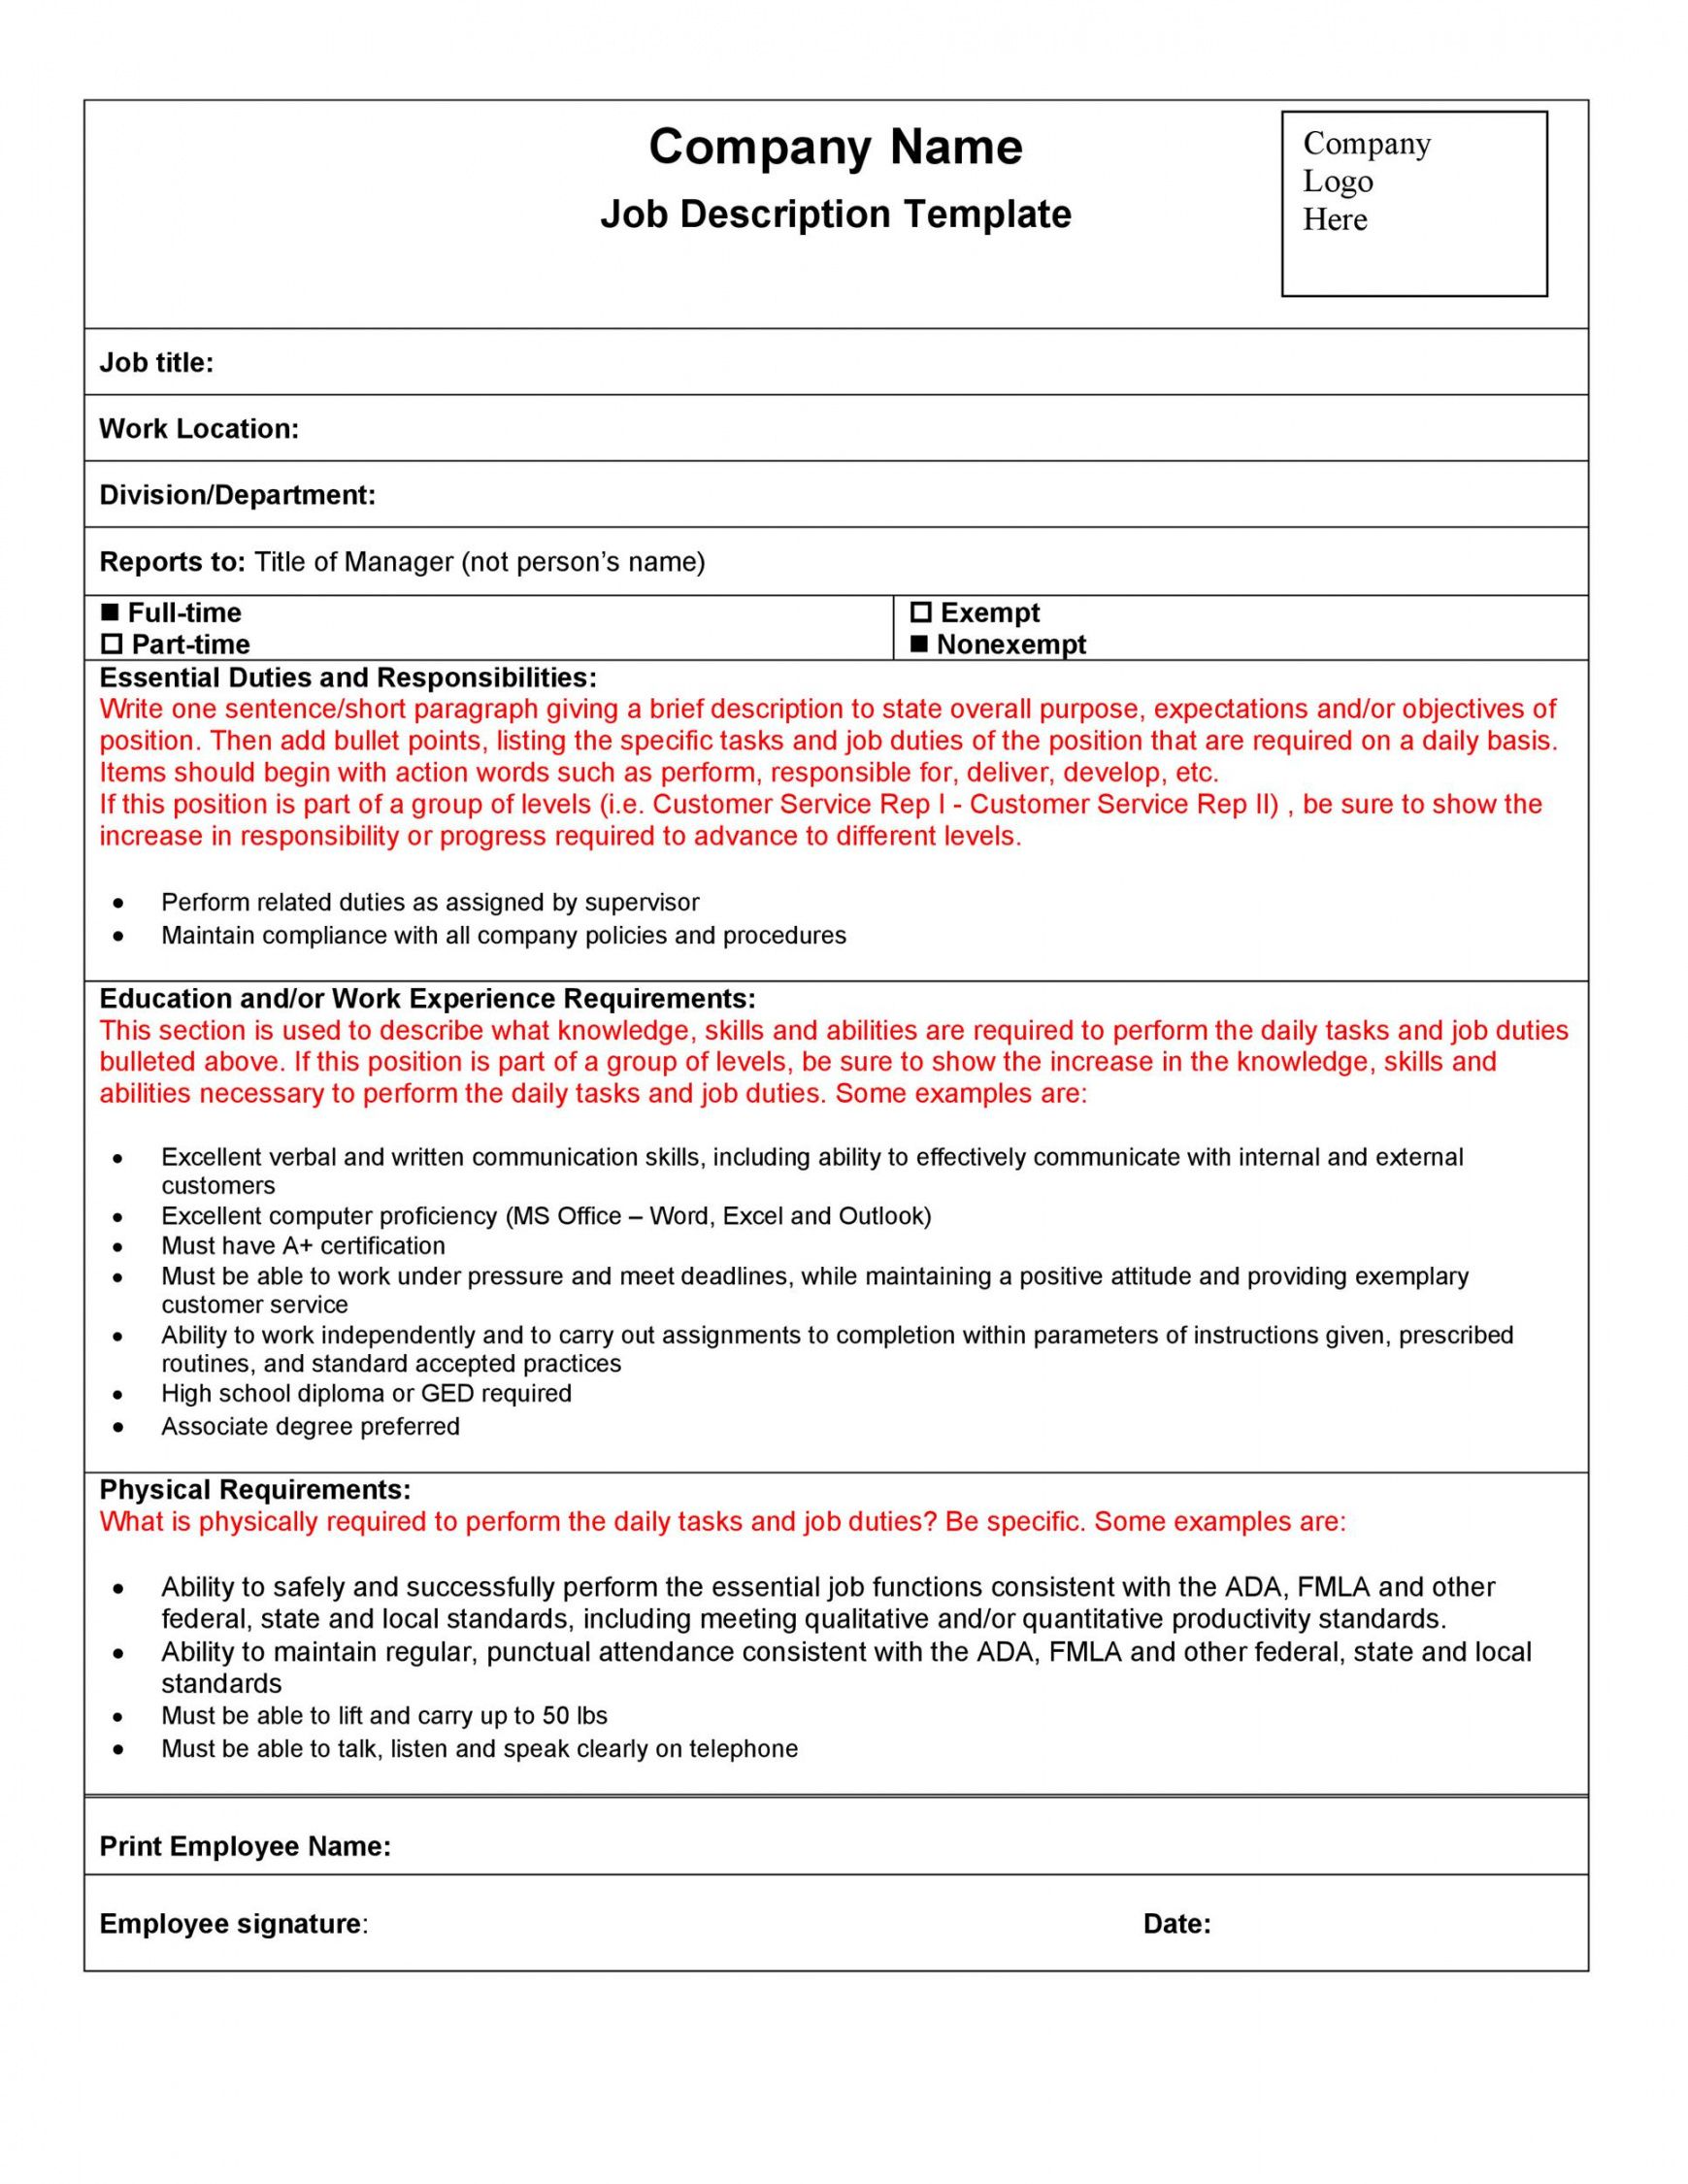 free 47 job description templates &amp; examples ᐅ templatelab simple job description template pdf